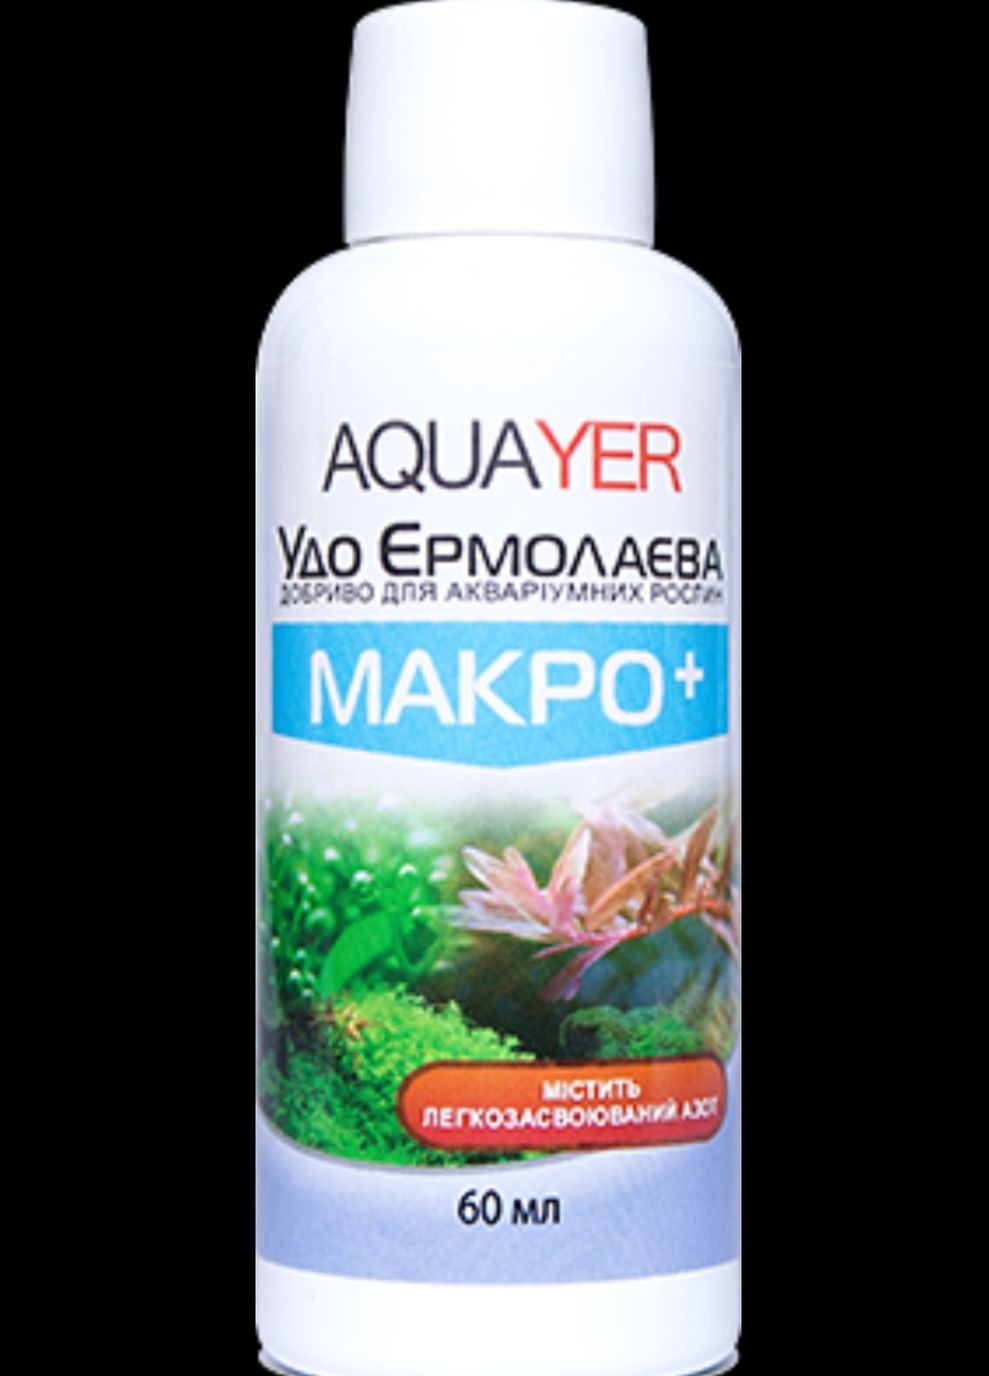 Удобрения для растений МАКРО+ 60мл, Удо Ермолаева в аквариум Aquayer (272821696)